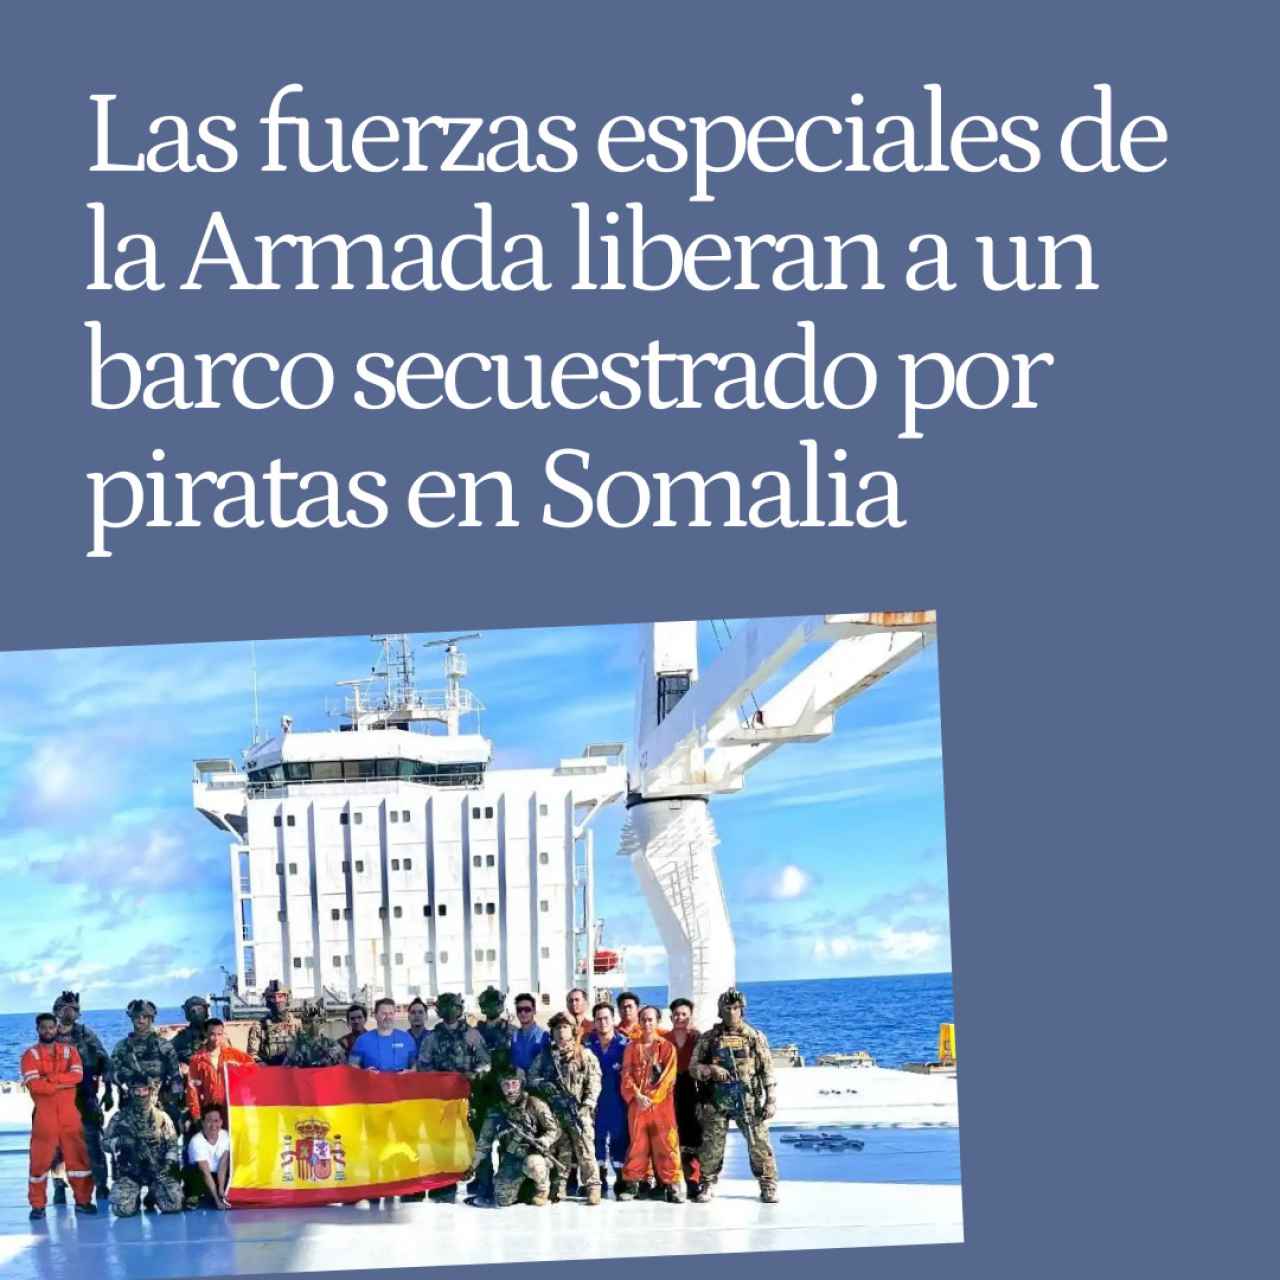 Las fuerzas especiales de la Armada liberan a un barco secuestrado por piratas cerca de Somalia